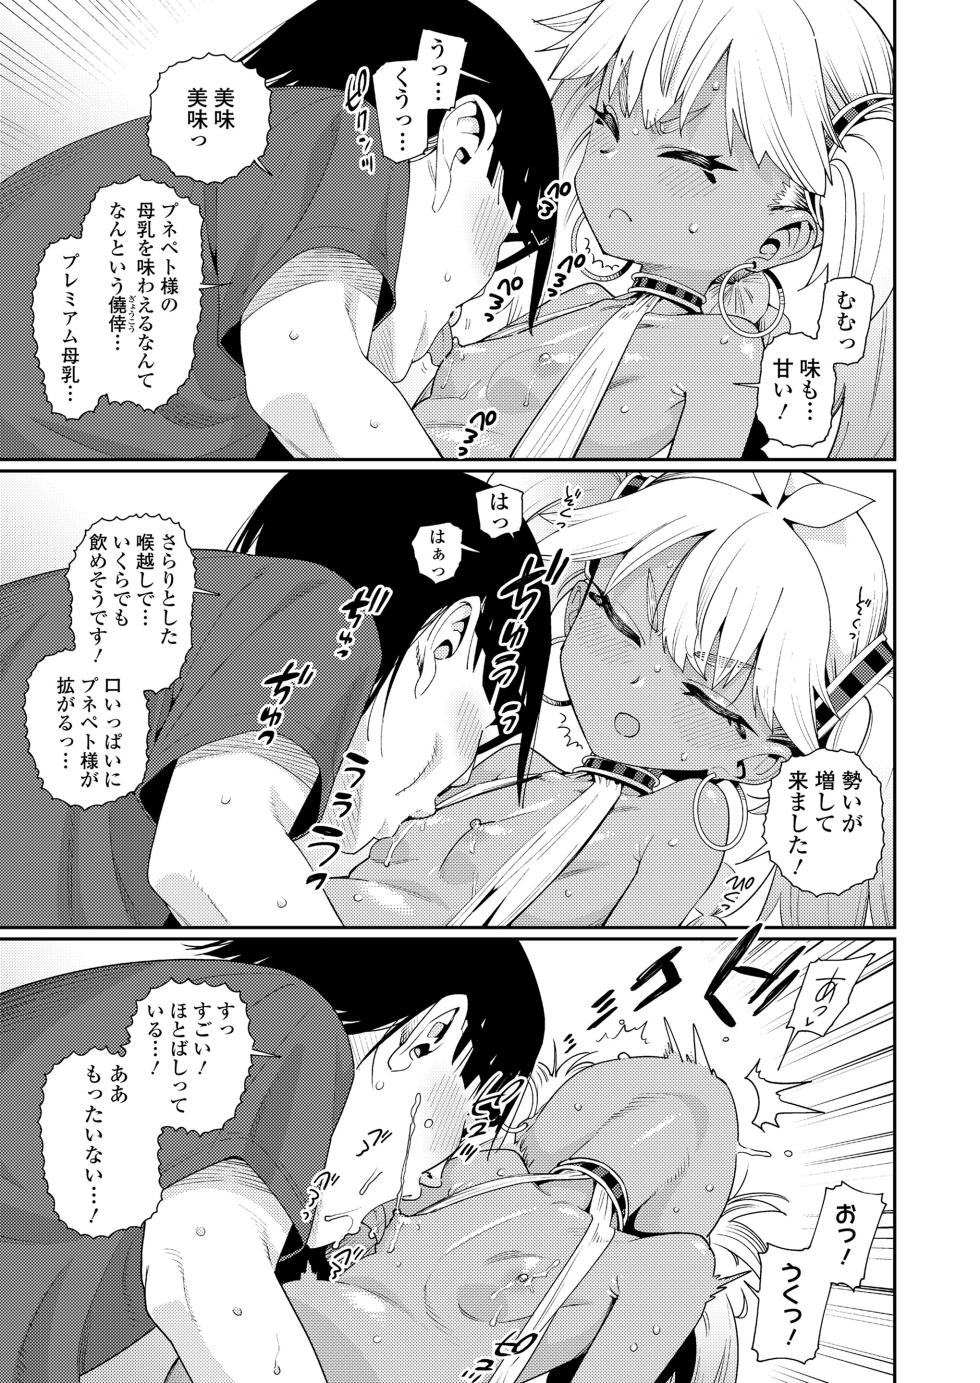 Towako 16 [Digital] - Page 9